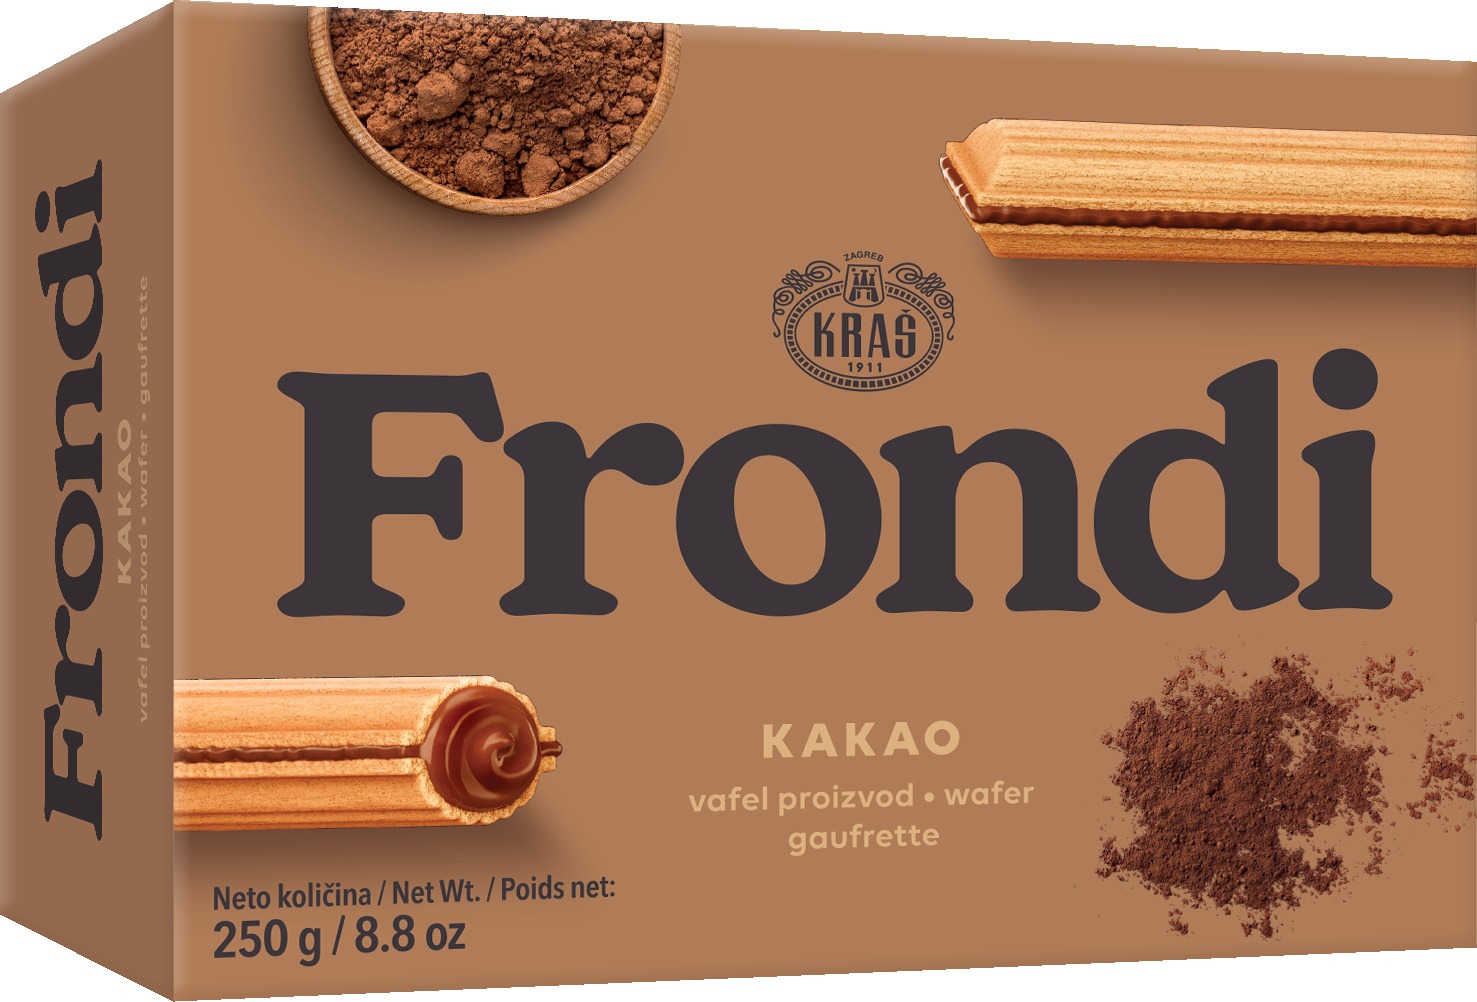 Slika za Vafel kakao Frondi maxi 250g